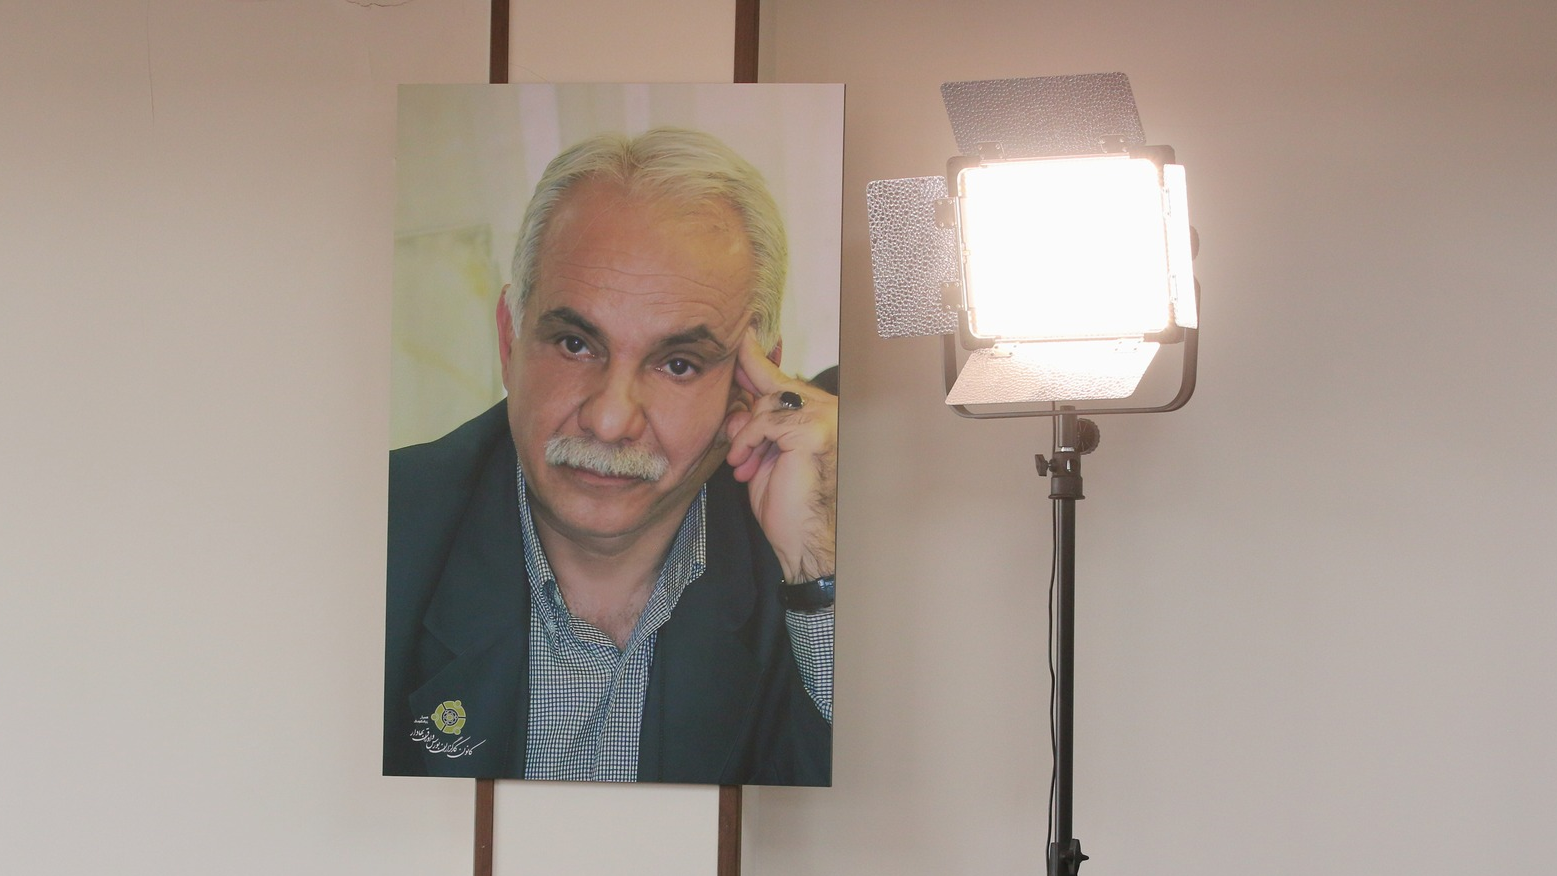 گزارش تصویری از مراسم «رونمایی از سالن استاد اکبر زرگانی‌نژاد در کانون کارگزاران بورس و اوراق بهادار» + فیلم